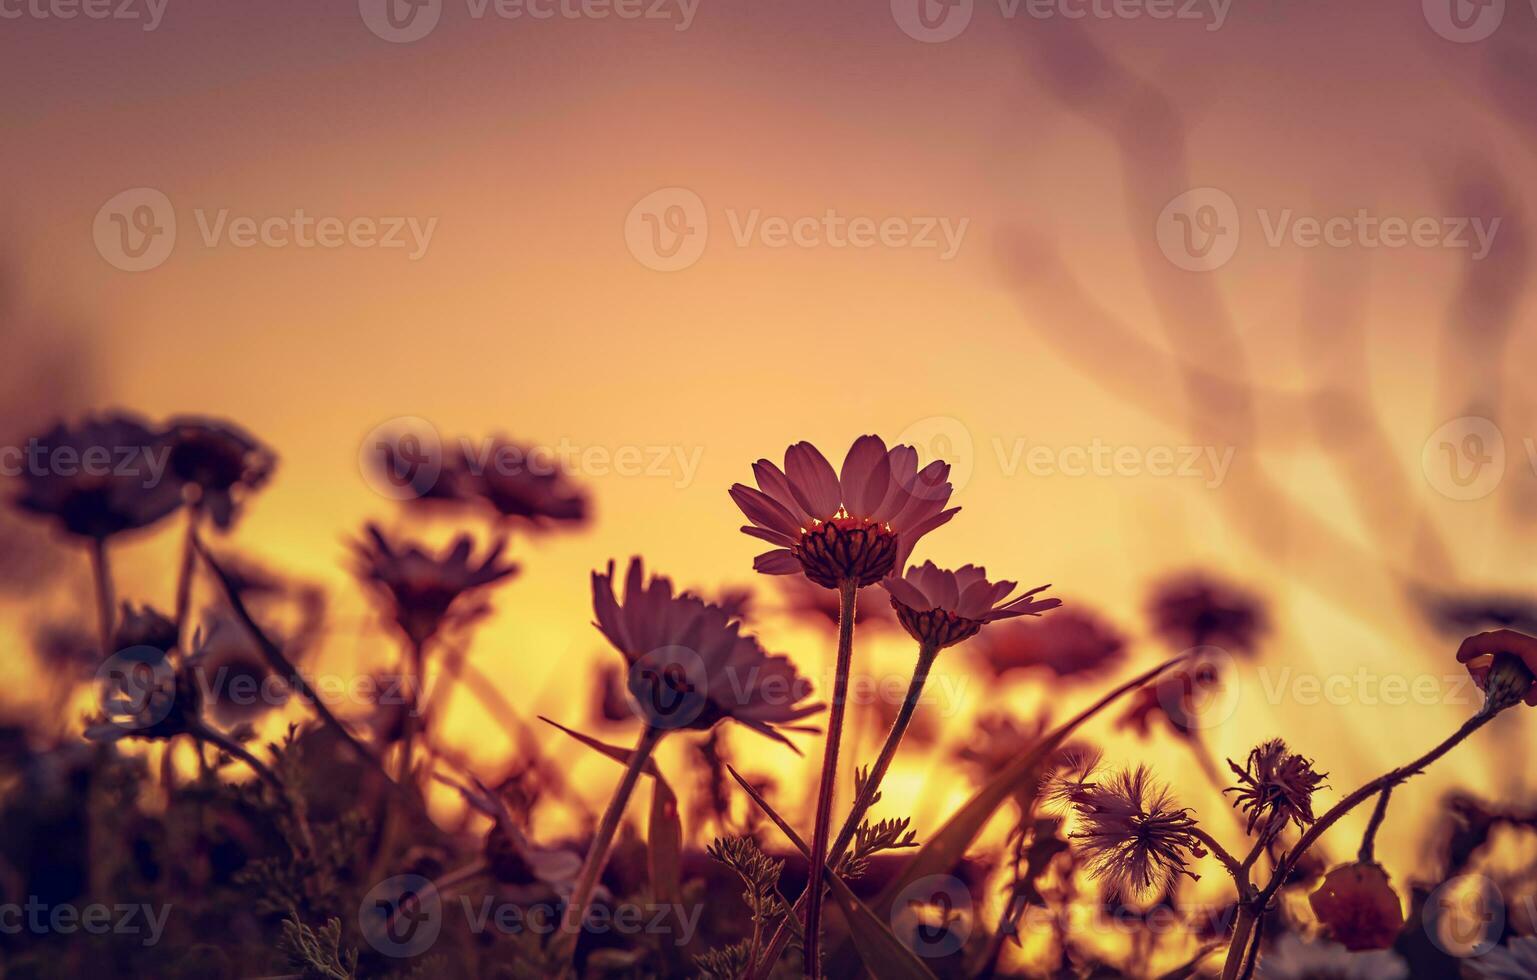 Daisy field on sunset photo